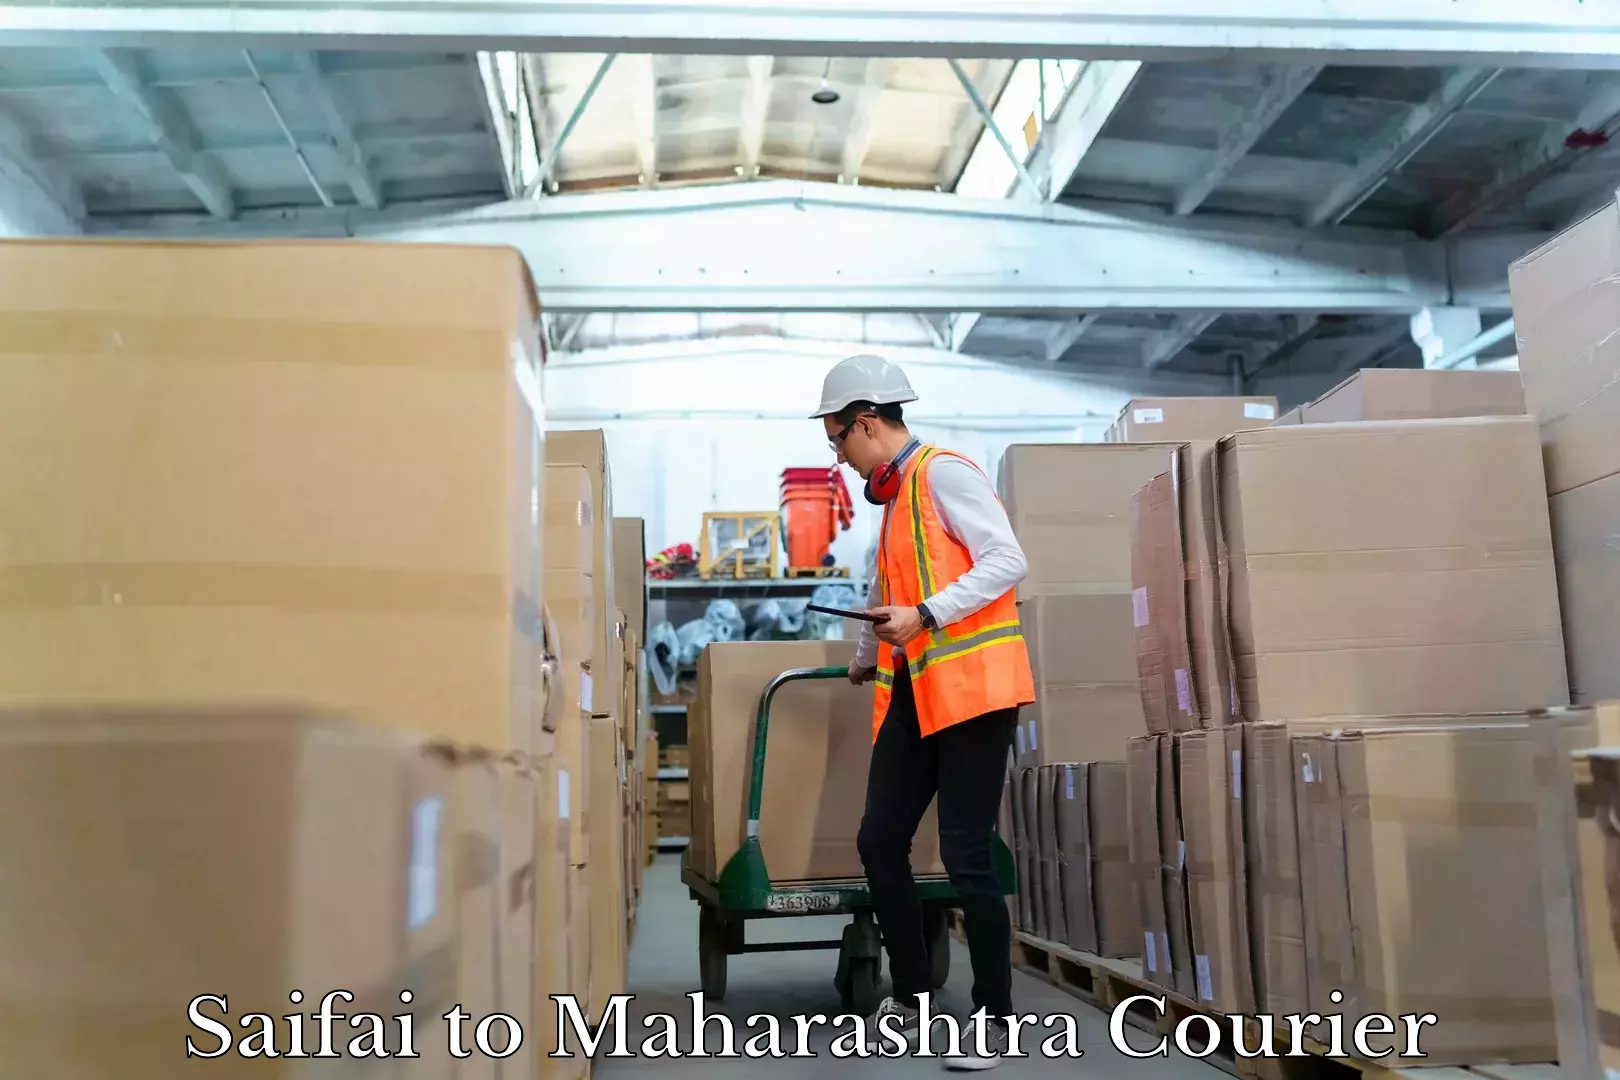 Professional courier services Saifai to Maharashtra